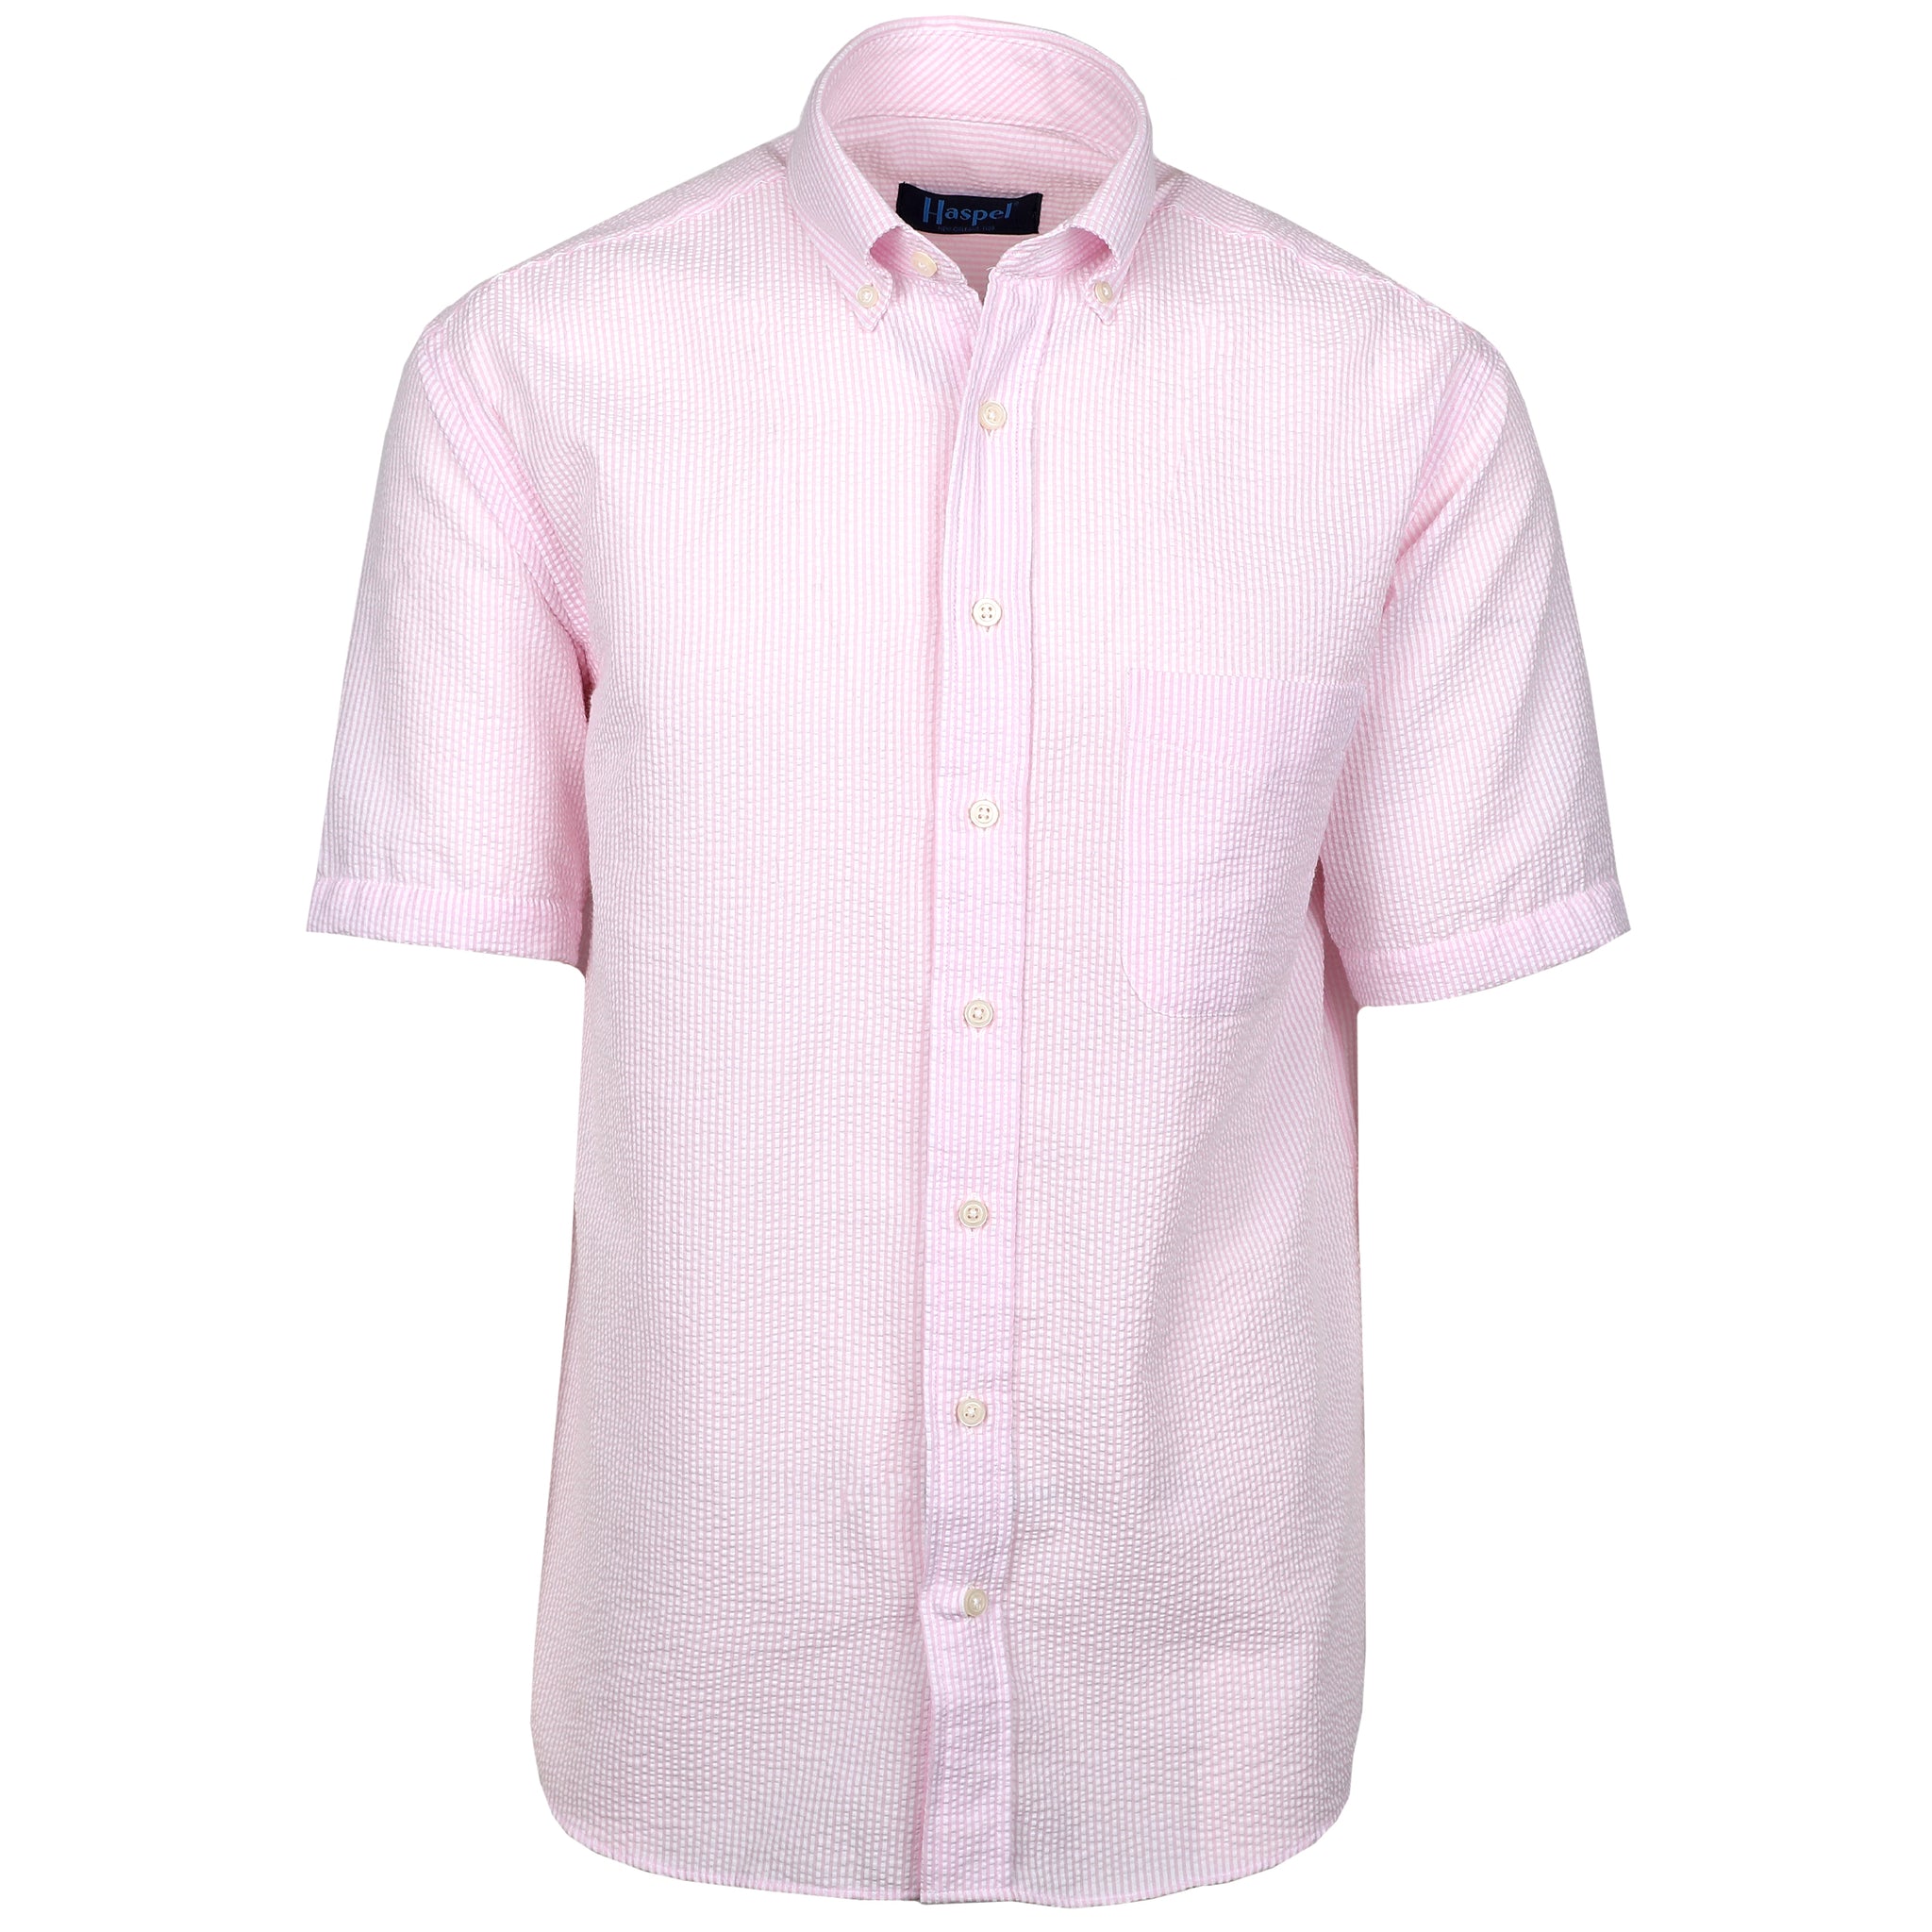 Men's Short Sleeve Shirts  Landreau Pink & White Seersucker Woven